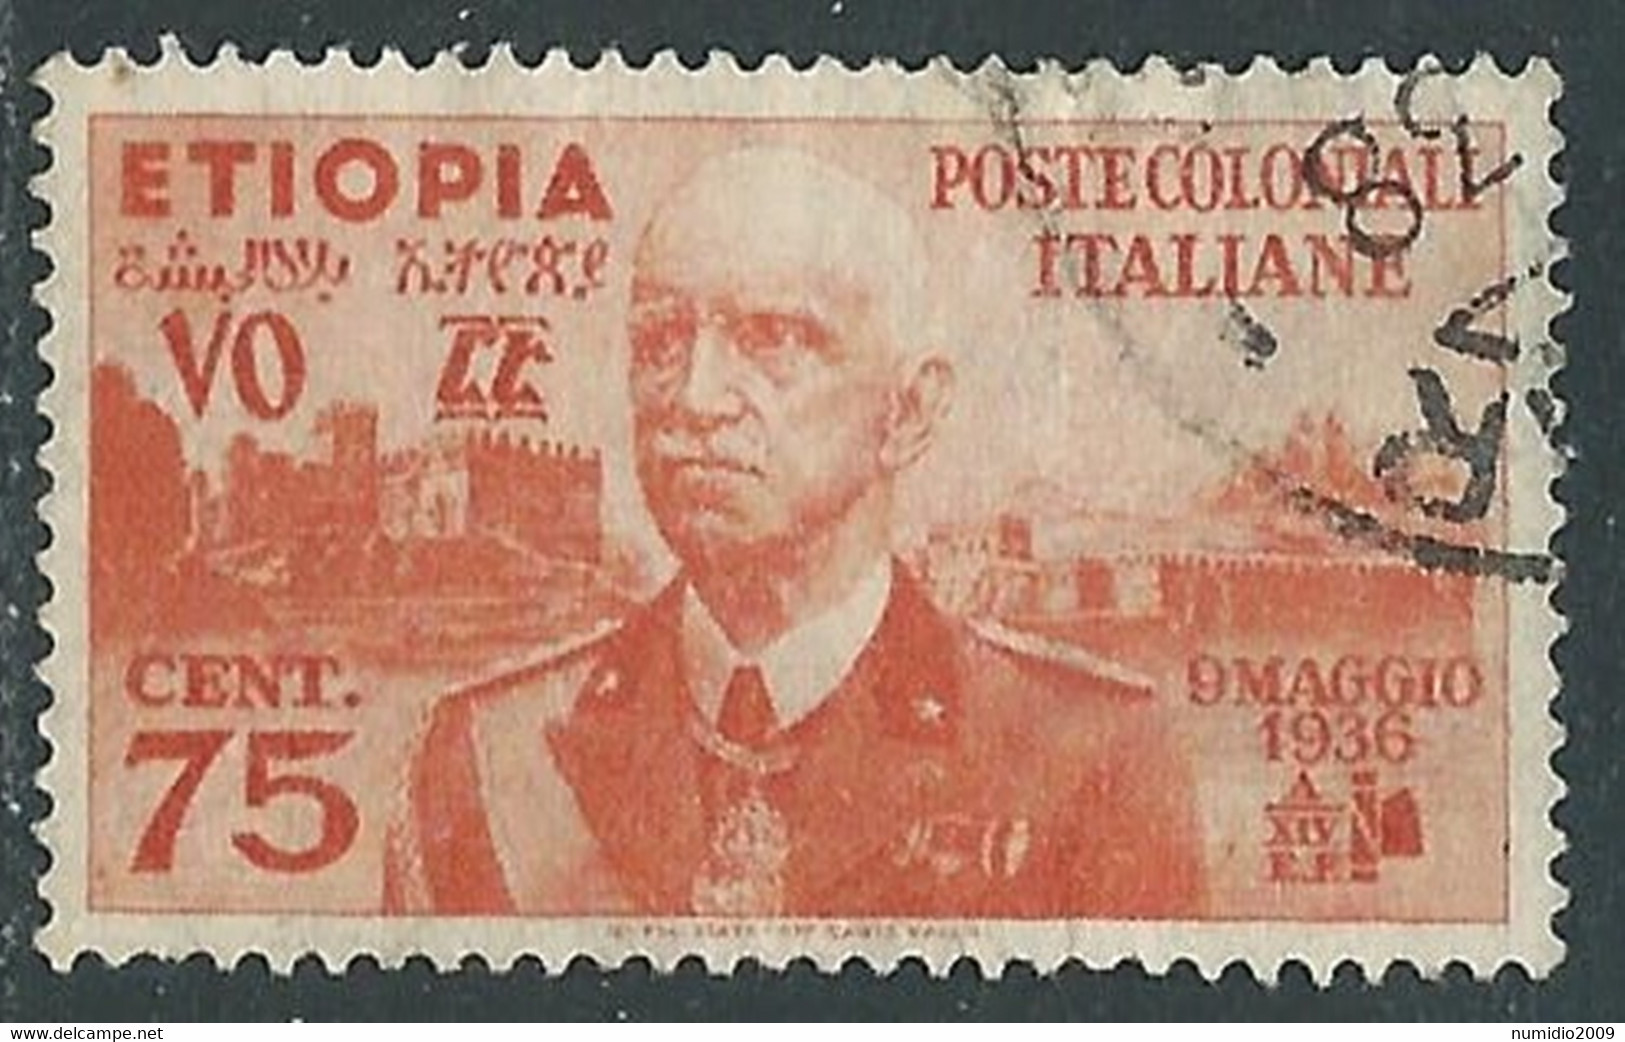 1936 ETIOPIA USATO EFFIGIE 75 CENT - RF25-5 - Etiopia